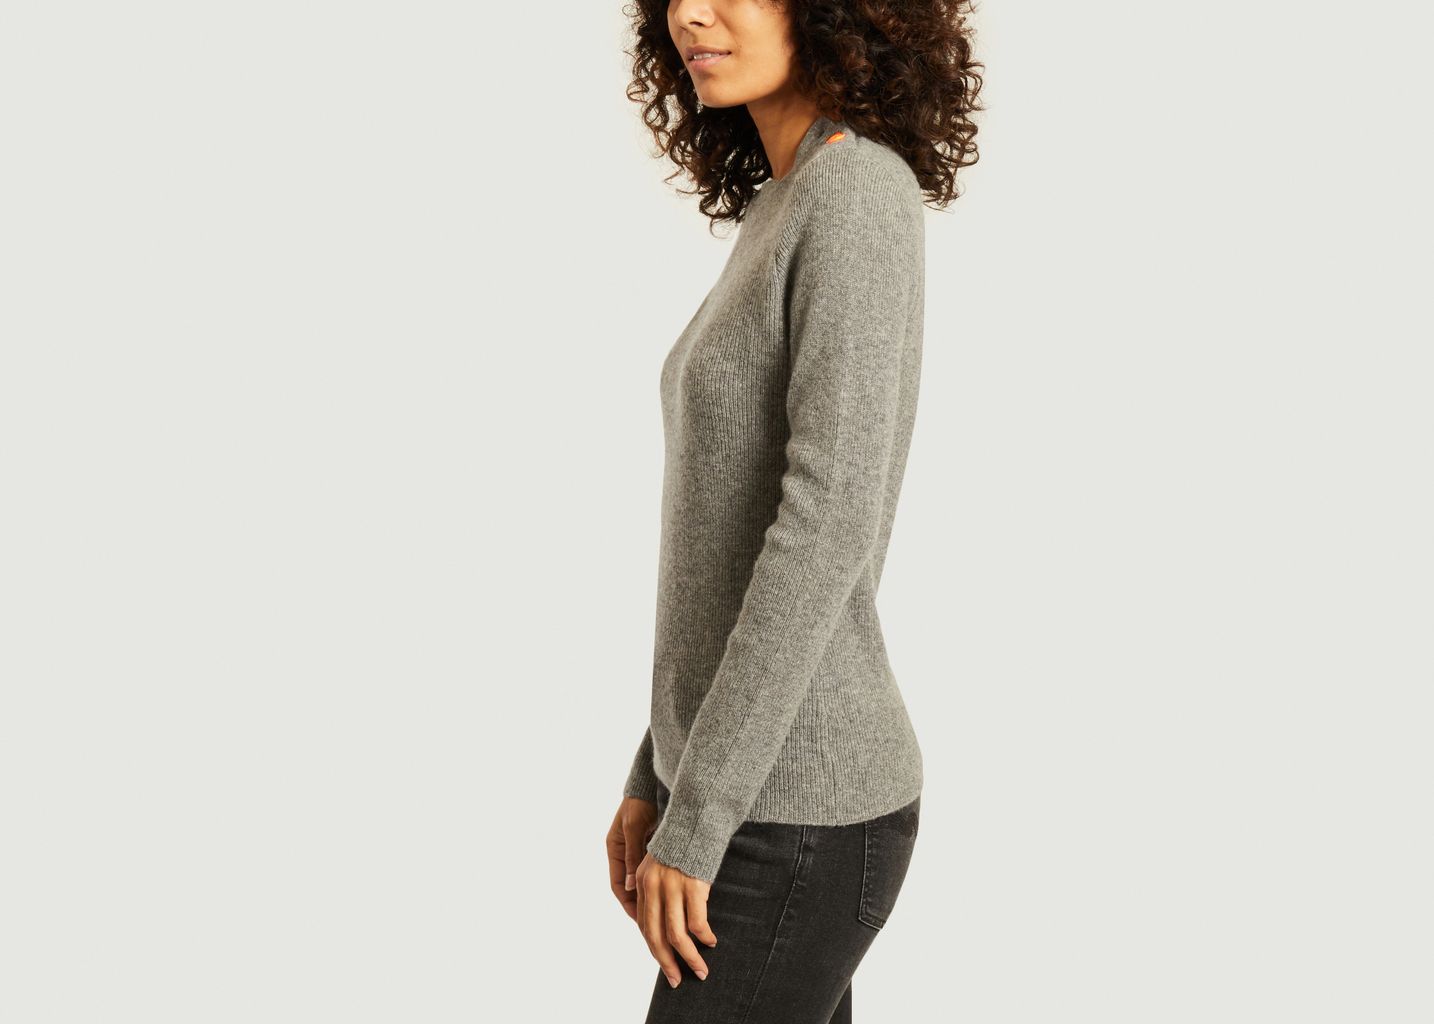 Caroline cashmere sweater - Absolut cashmere